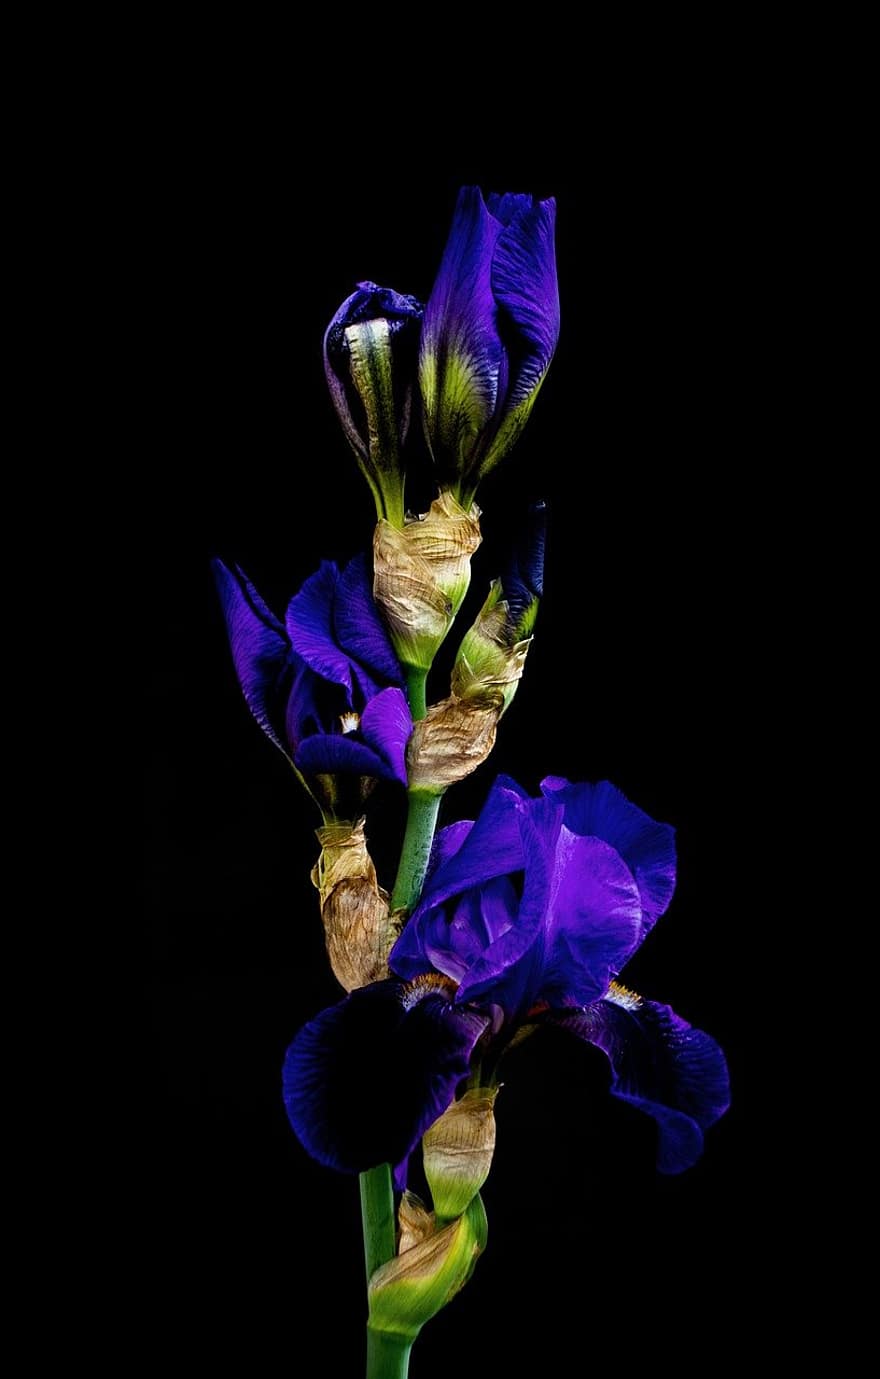 bunga-bunga, iris, bunga biru, kuncup, botani, flora, Latar Belakang, wallpaper, alam, minimalis, kontras